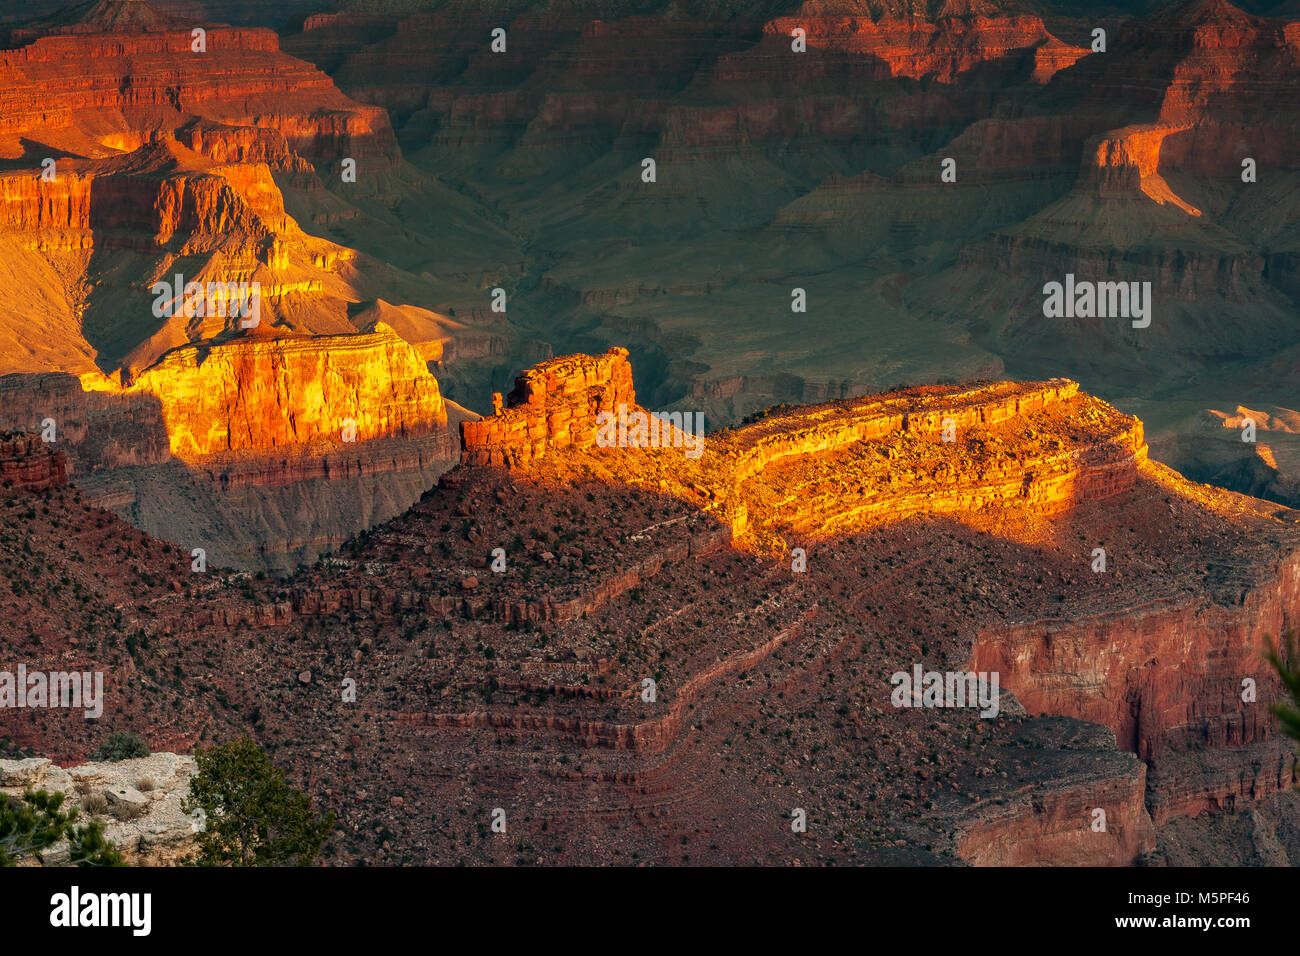 Amanecer en el Gran Cañón,el sol naciente selecciona y resalta interesantes formaciones rocosas en el vasto espacio del Borde Sur del Cañón, Arizona Foto de stock